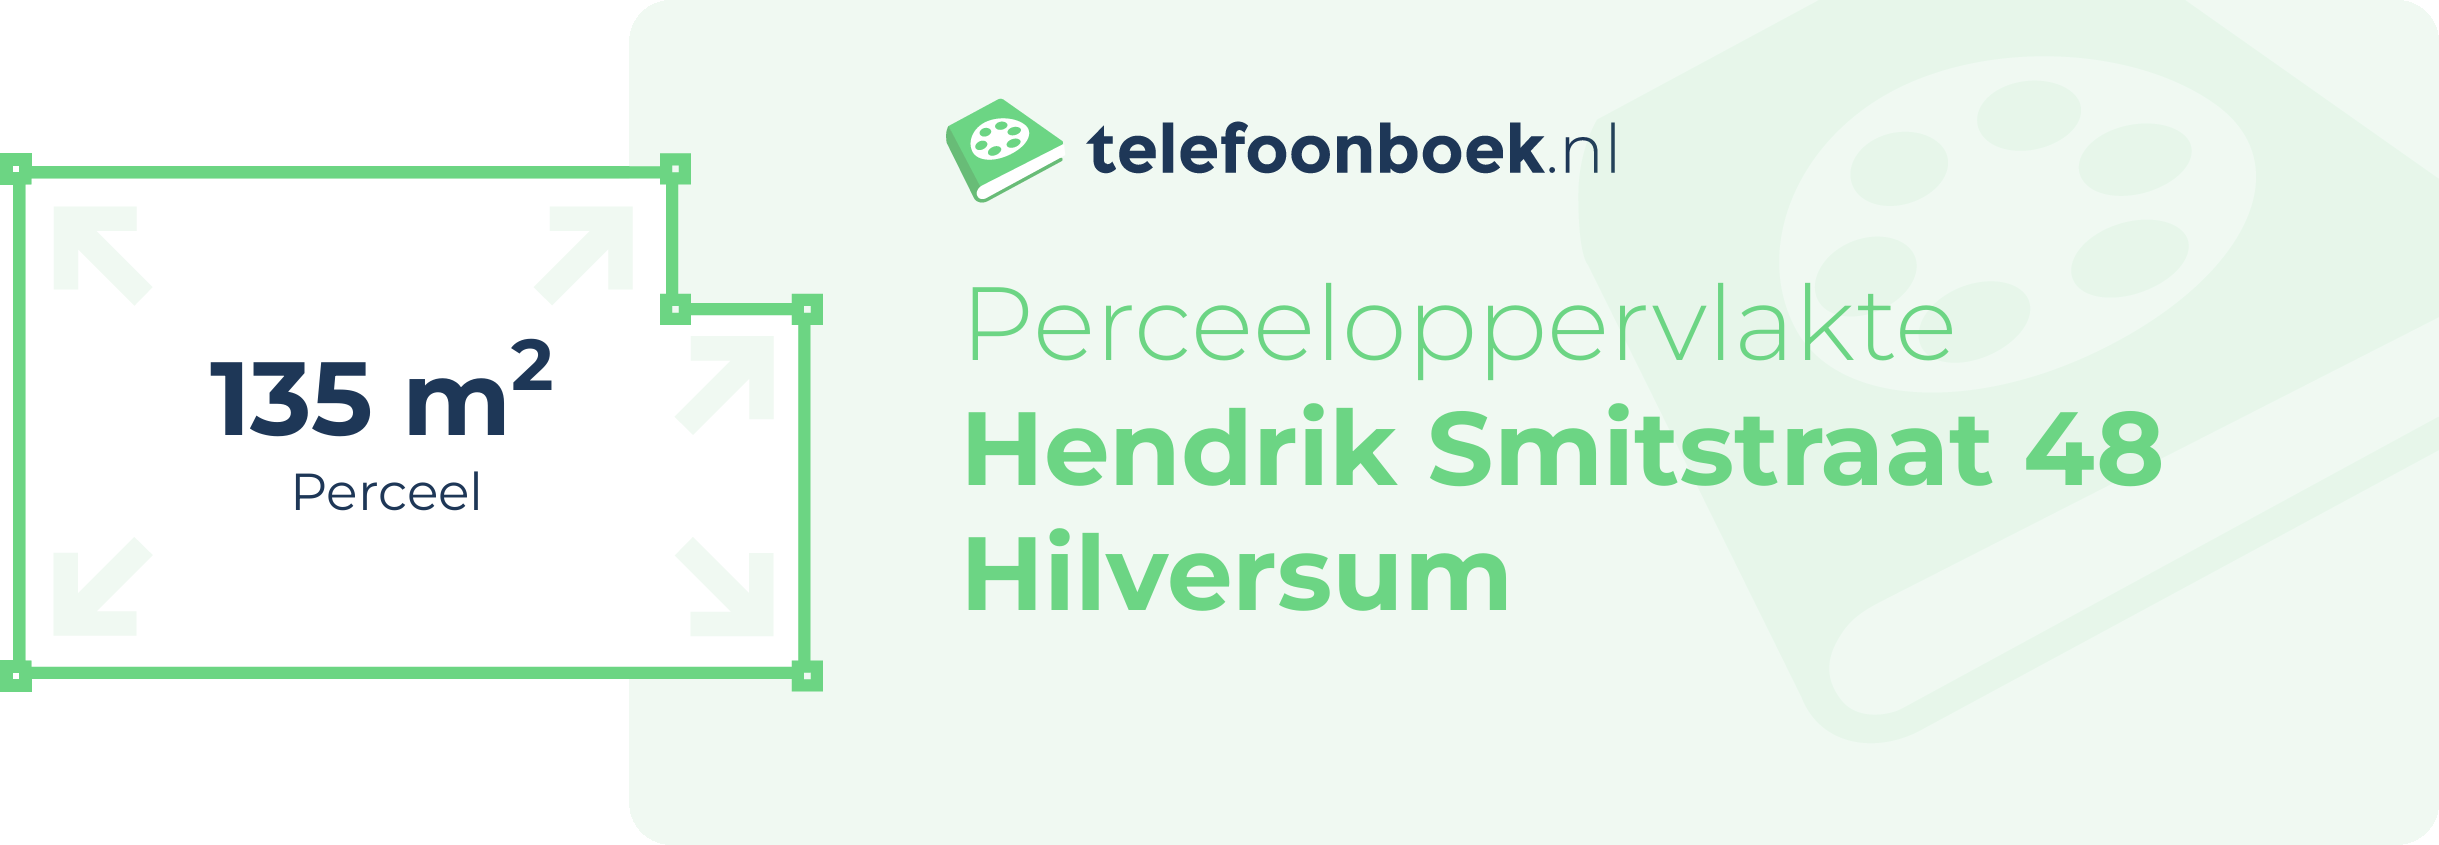 Perceeloppervlakte Hendrik Smitstraat 48 Hilversum